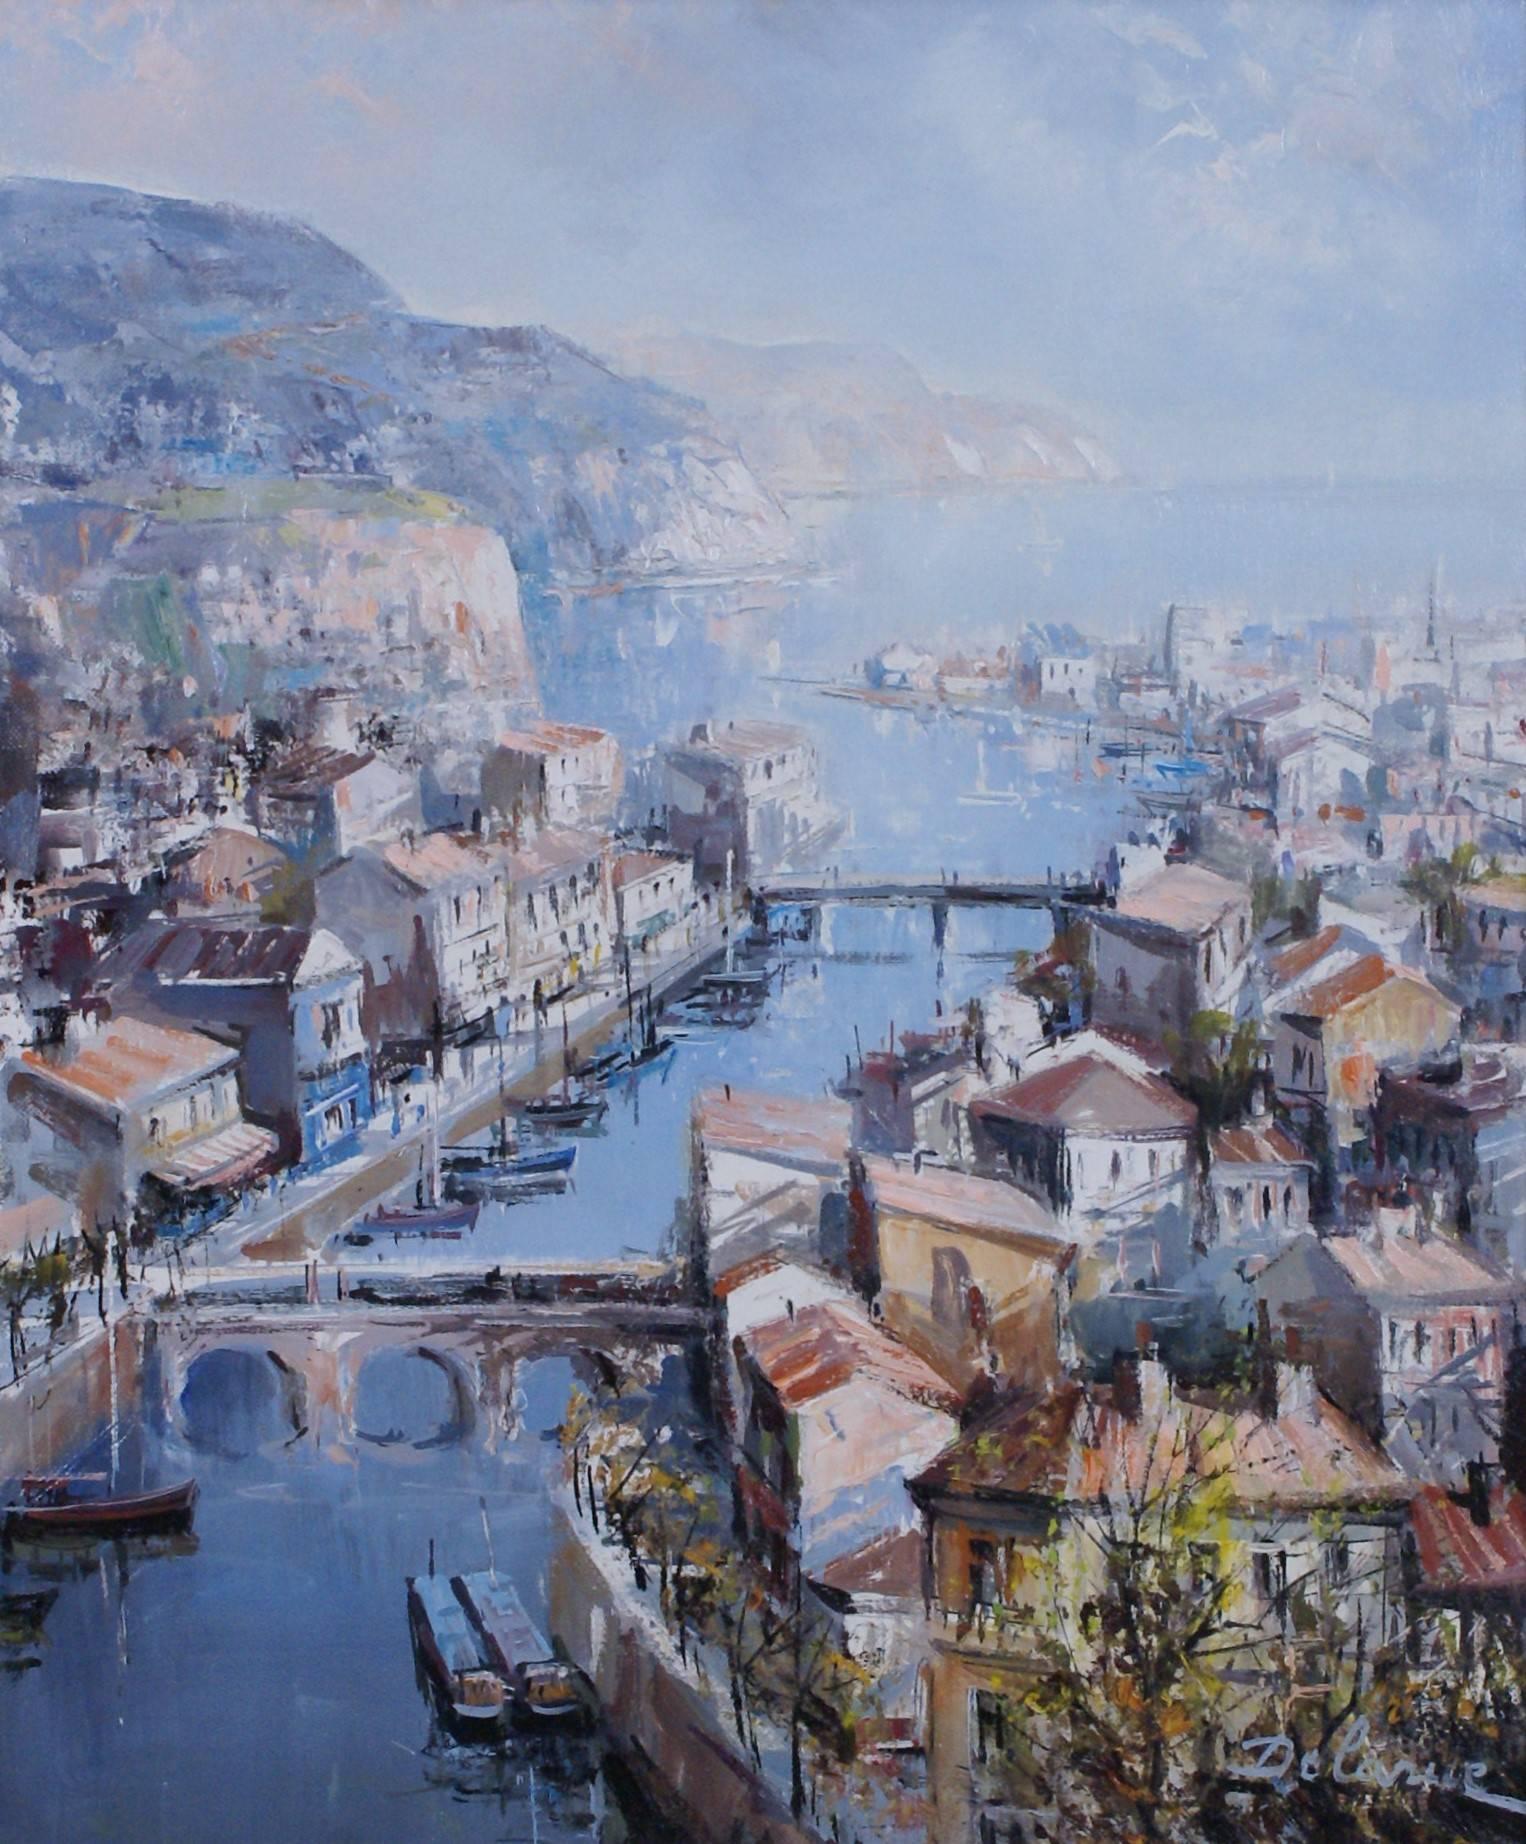 Port de Sète  - Painting by Lucien Delarue